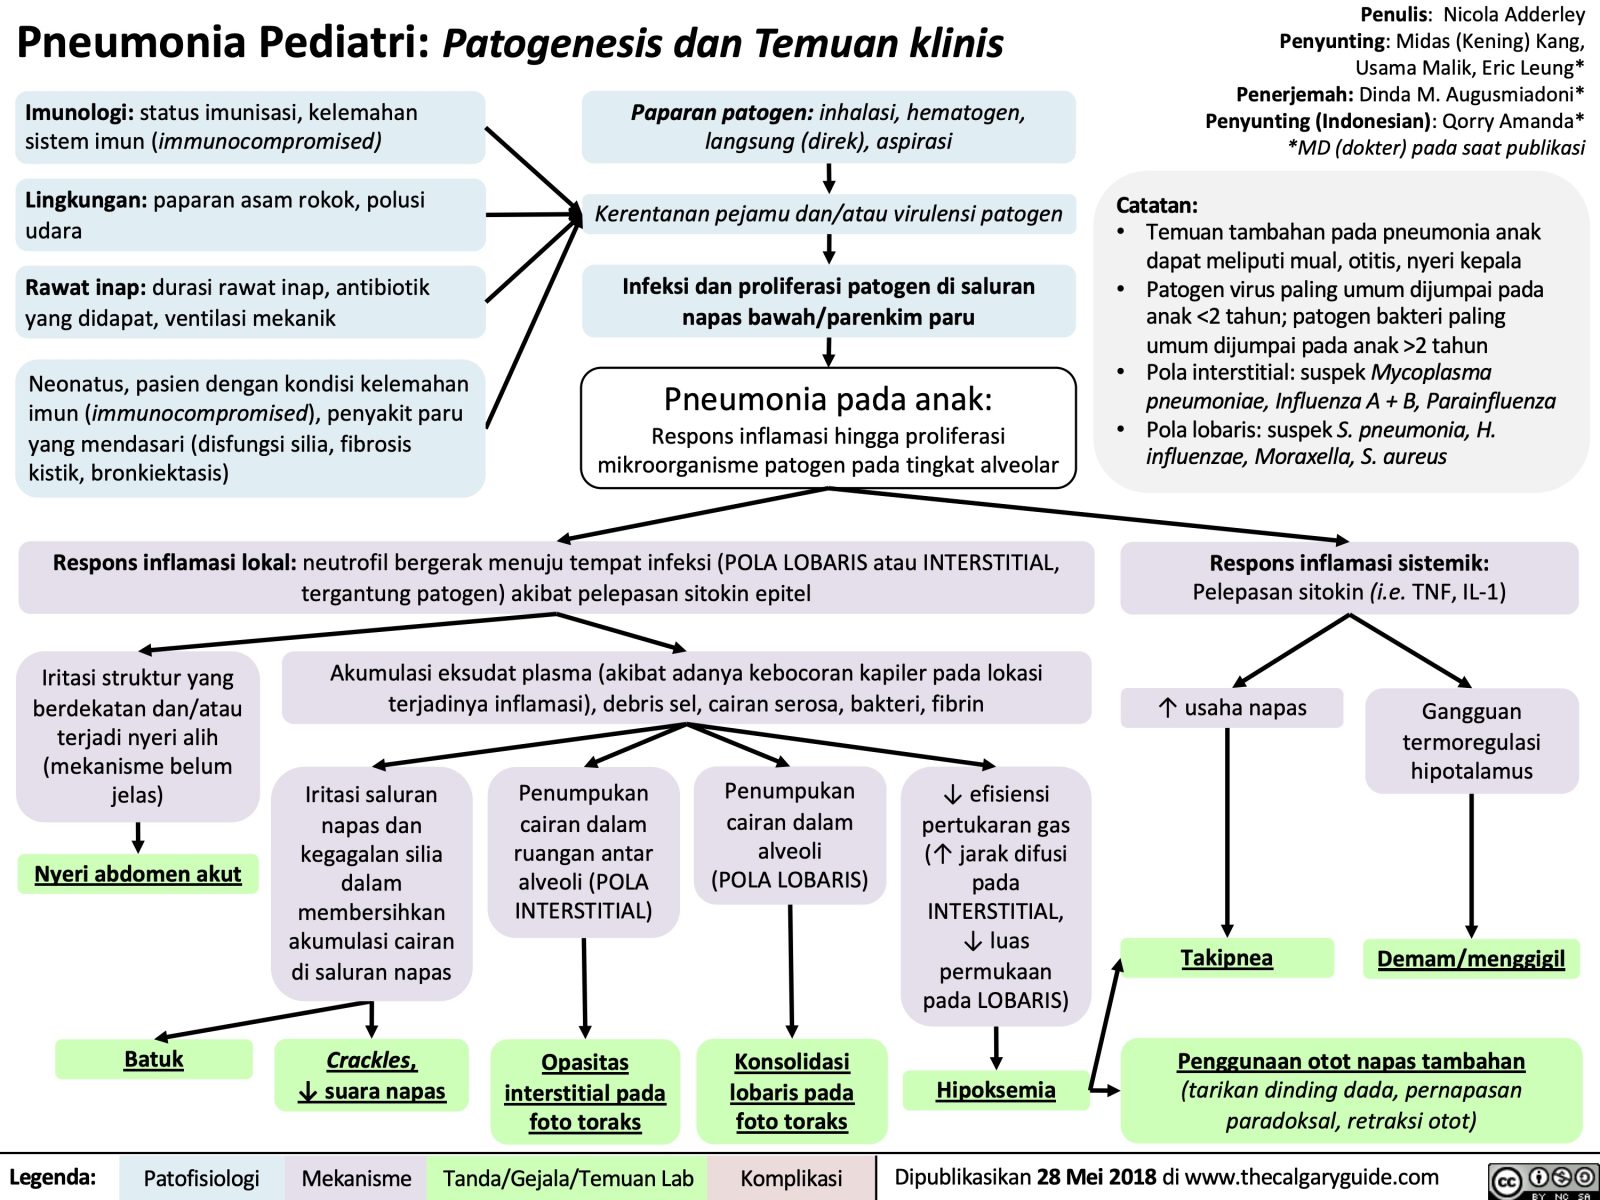 Pneumonia Pediatri Patogenesis Dan Temuan Klinis Calgary Guide